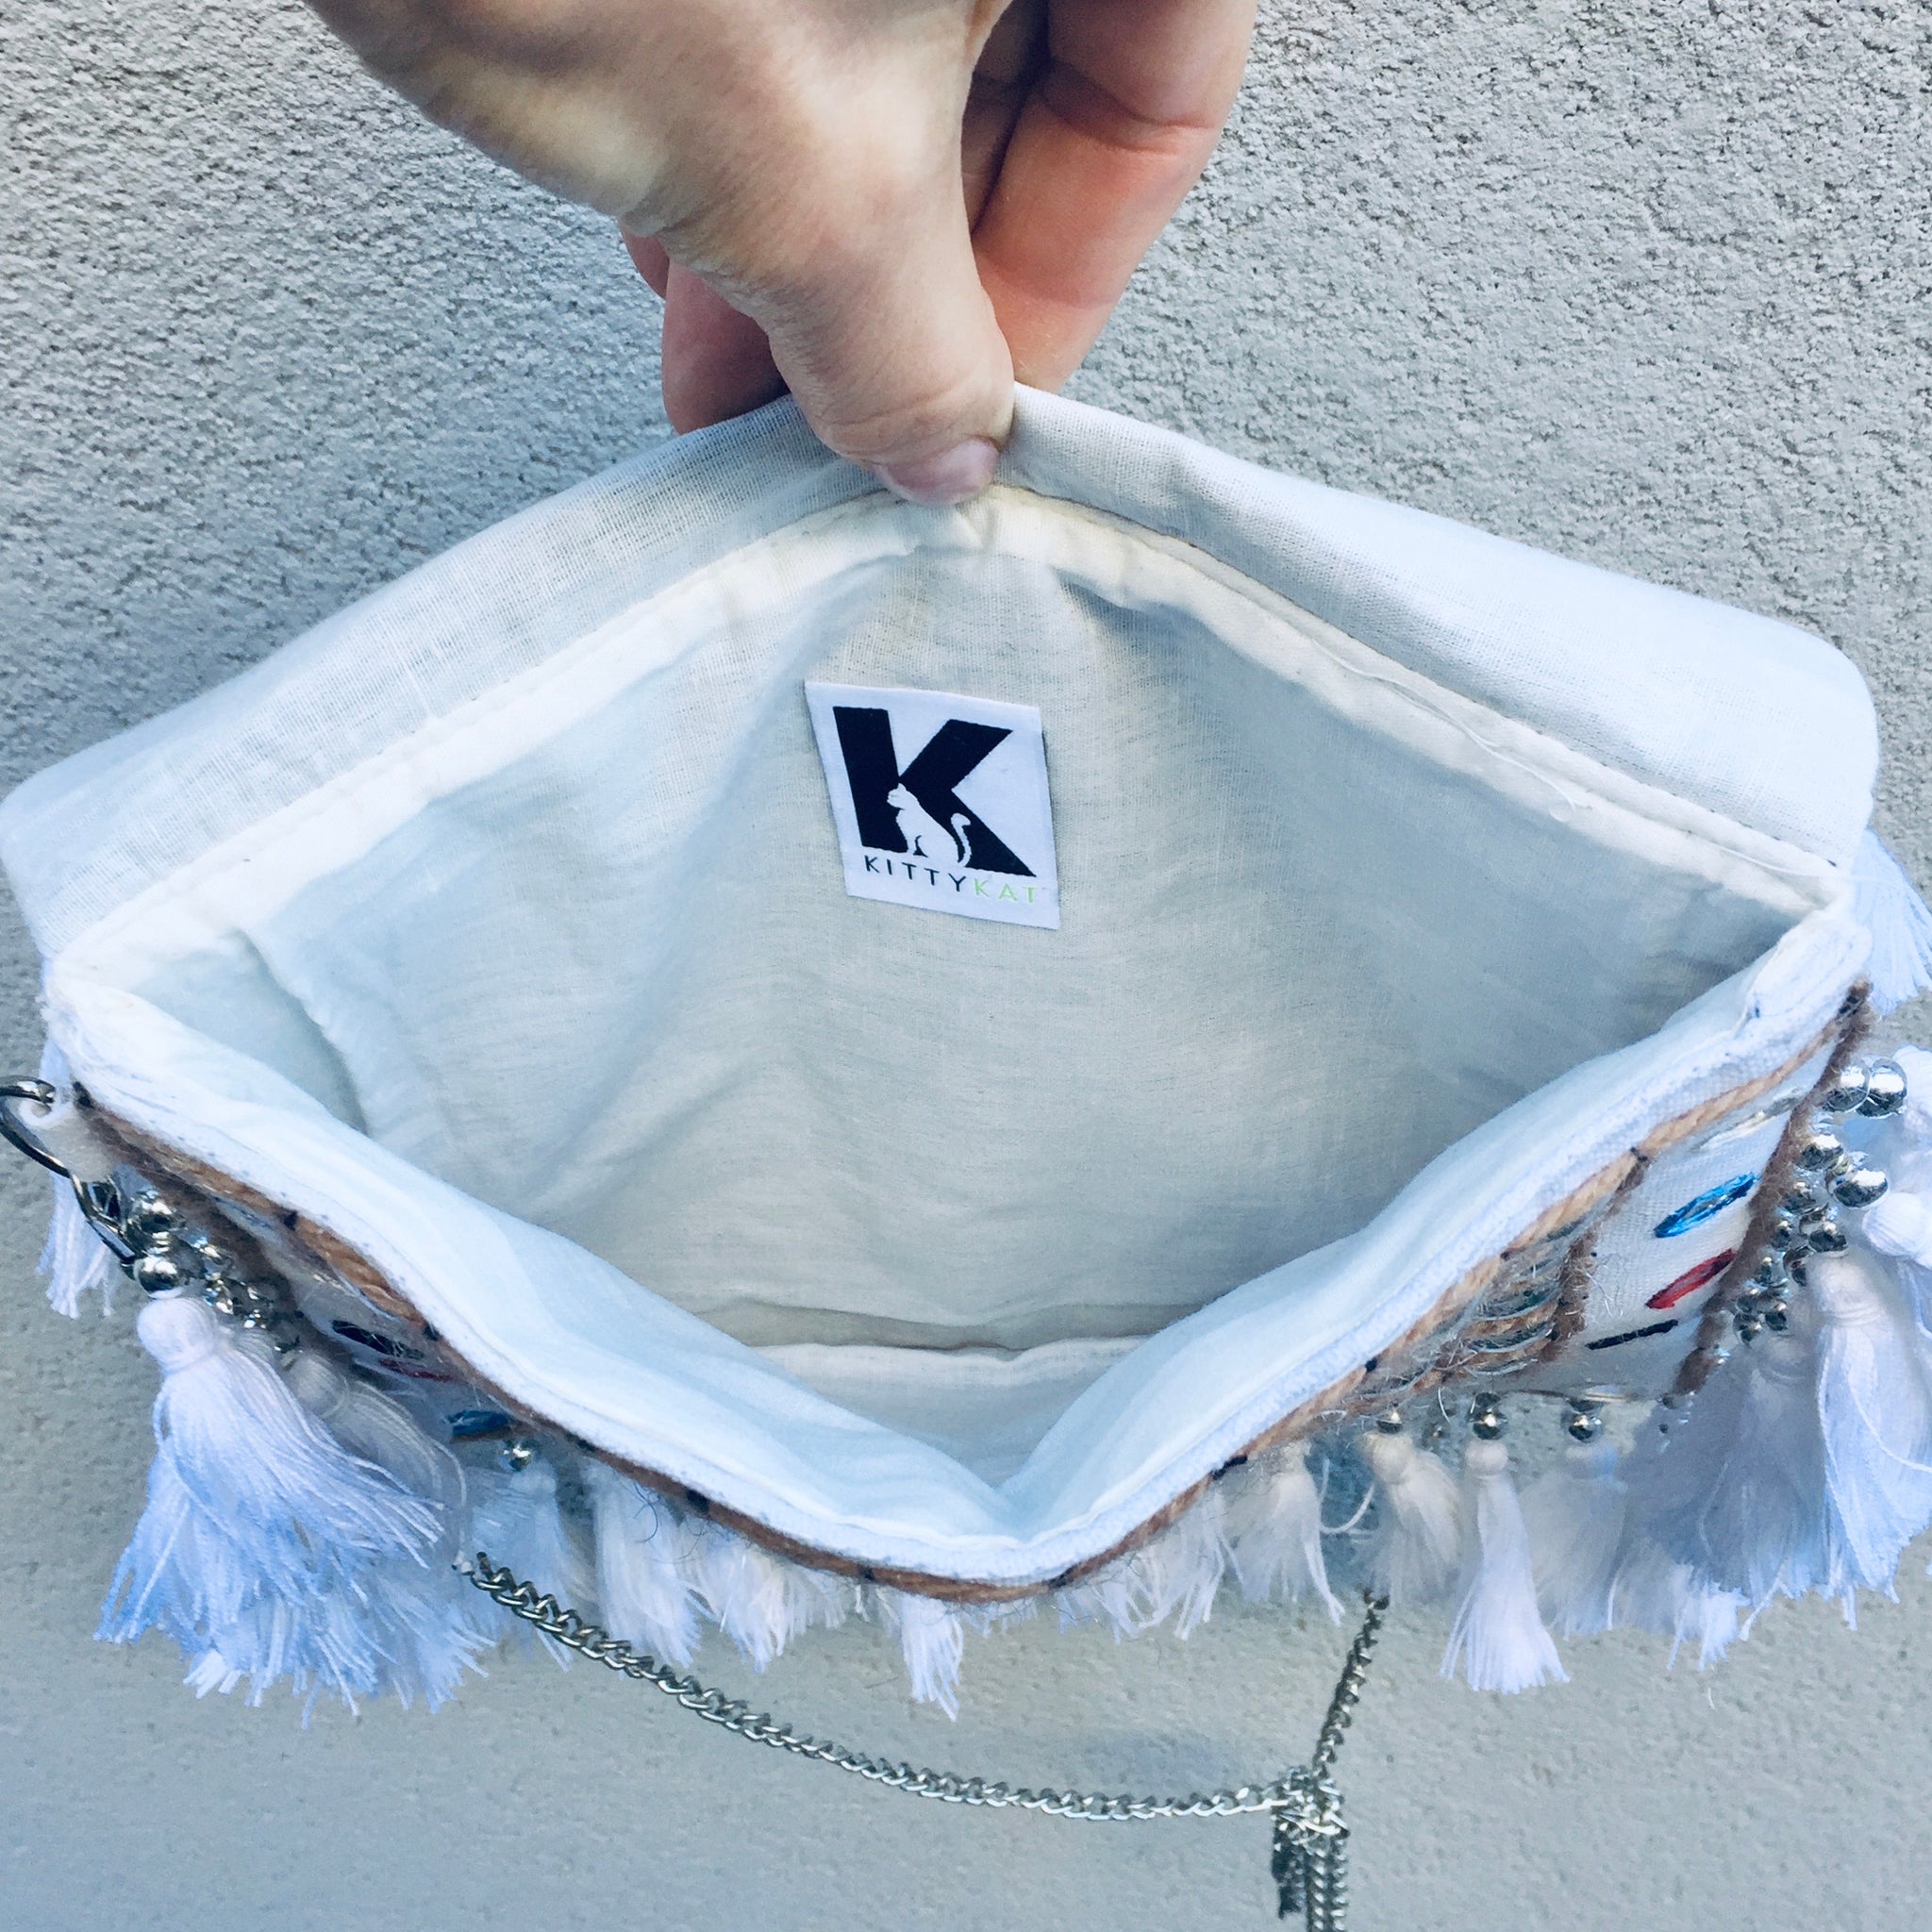 Jayne Bohemian White Fringed Festival Clutch Bag | KITTY KAT